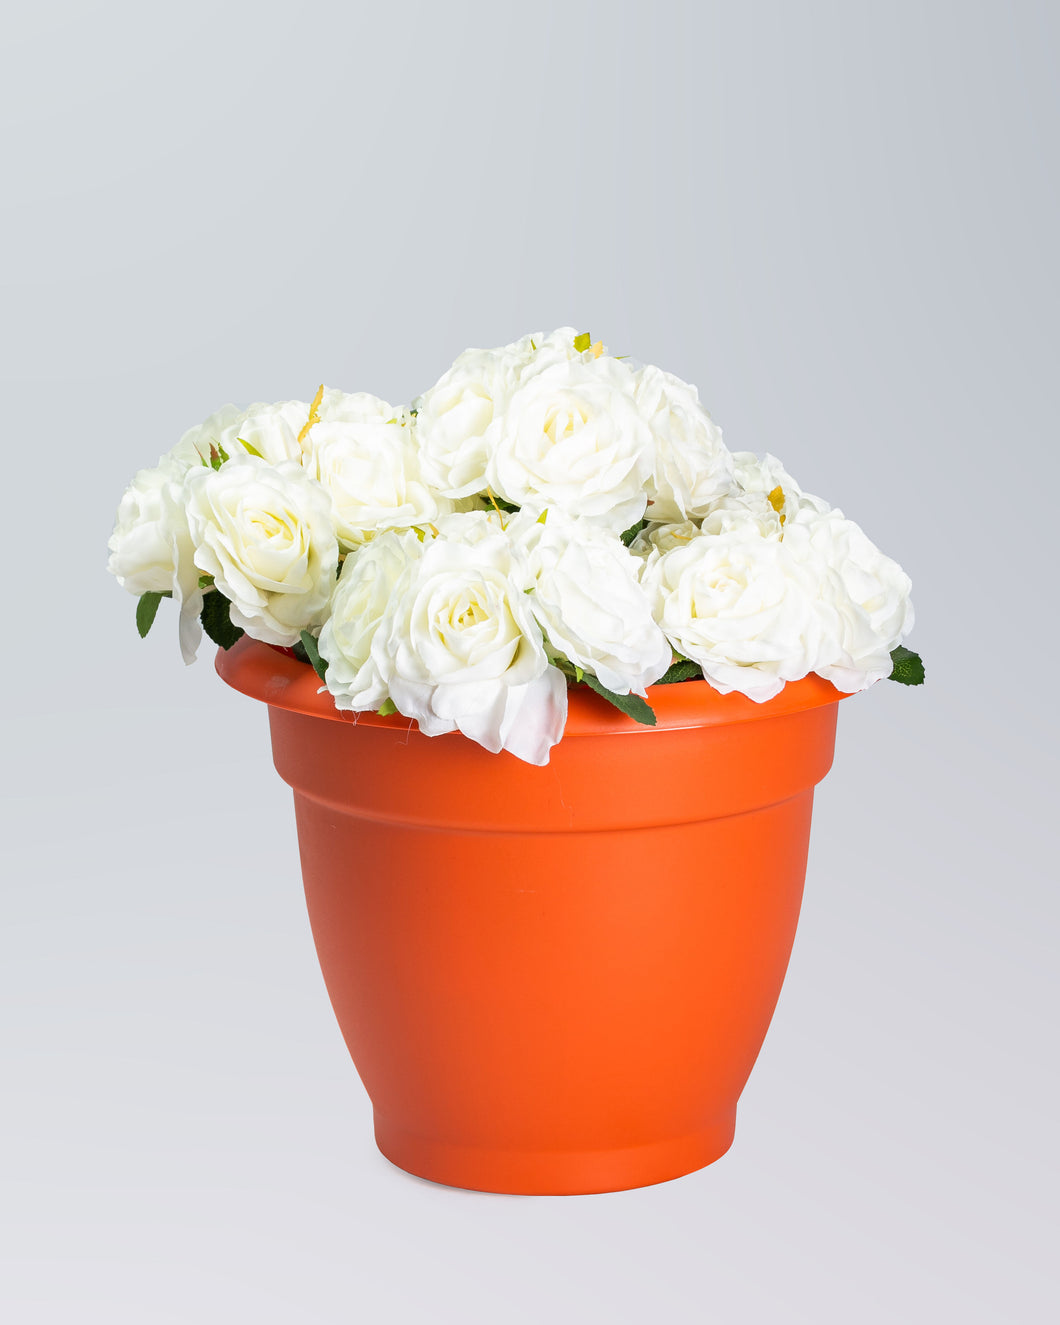 HW Cream rose bouquet 66028-Cream